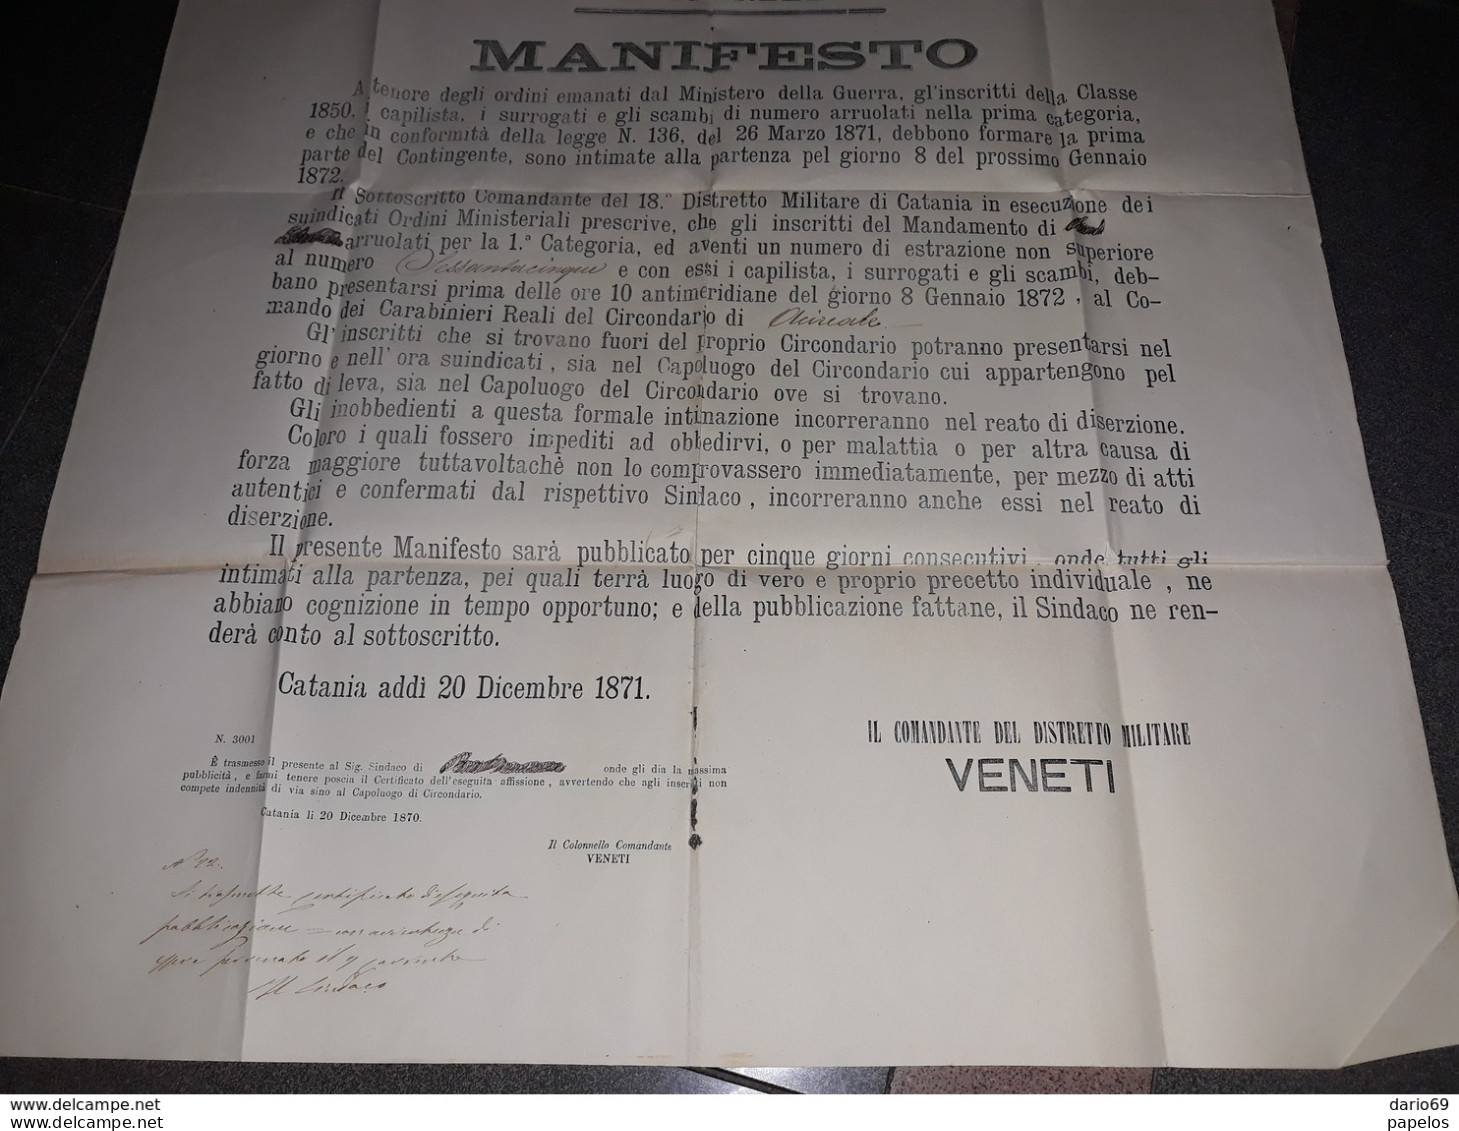 1871 MANIFESTO CATANIA  18°  DISTRETTO MILITARE - Historische Documenten